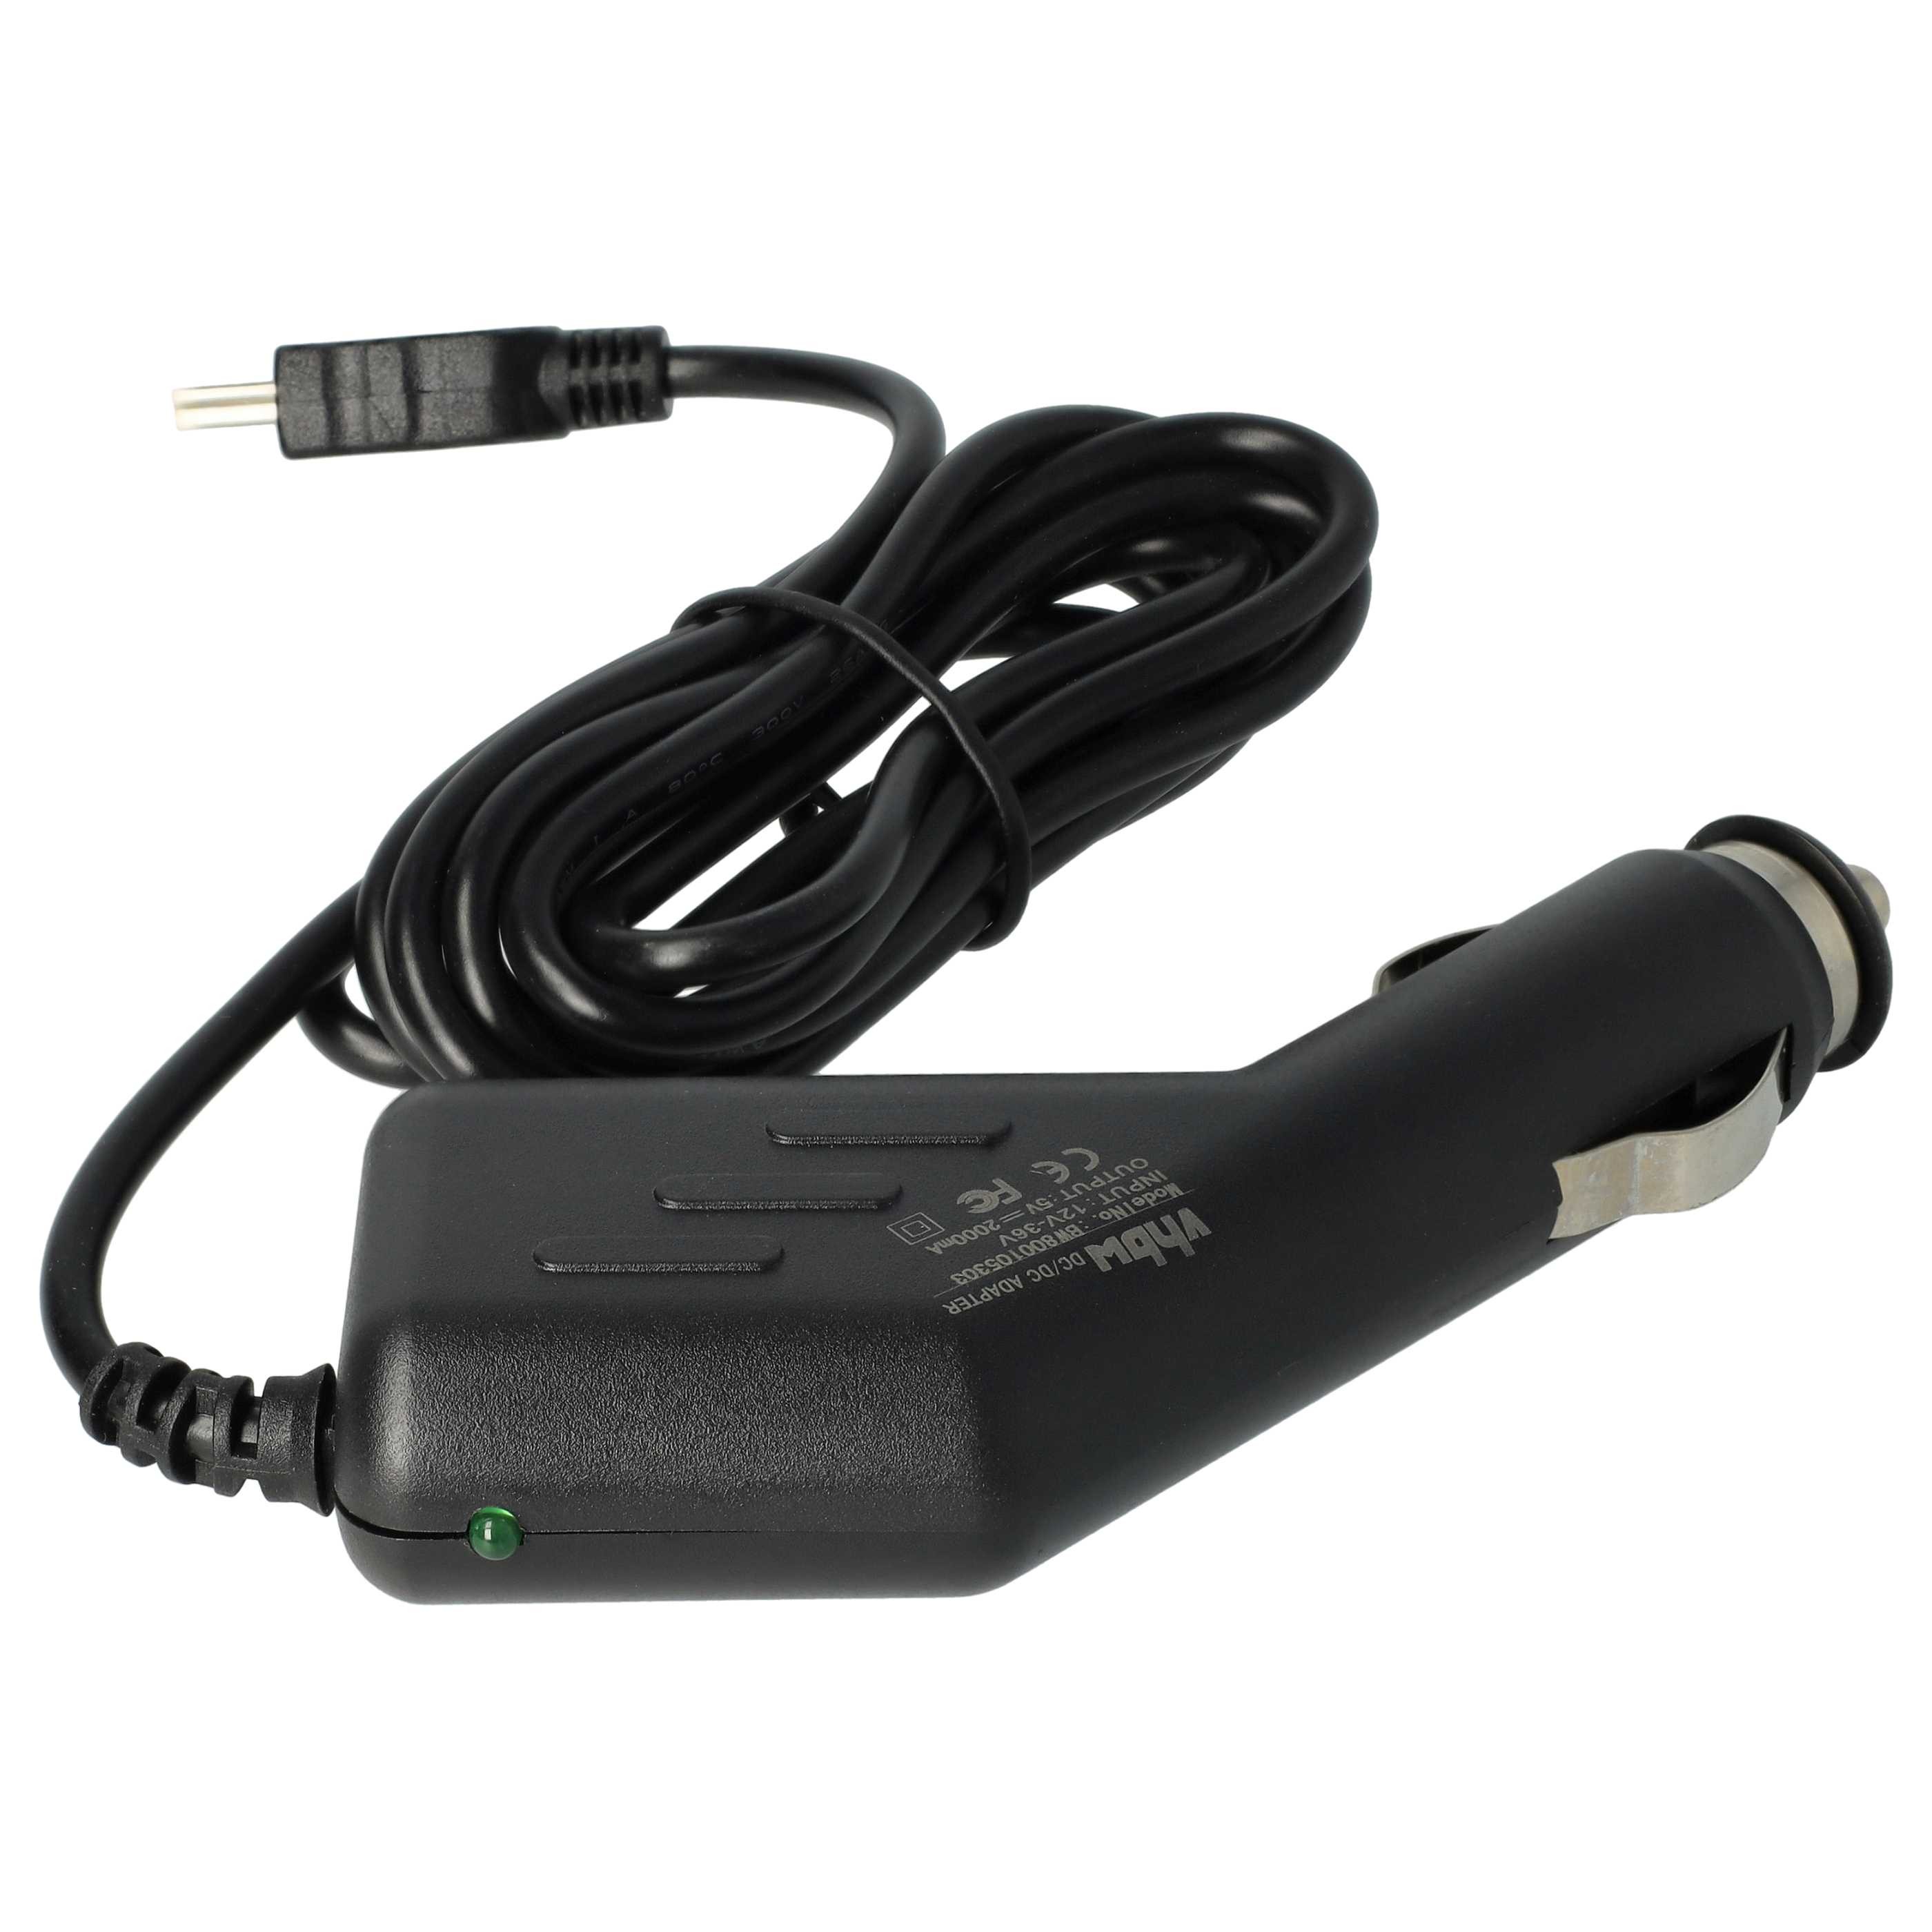 Caricatore per auto mini-USB 2,0 A per dispositivi come GPS, navigatore